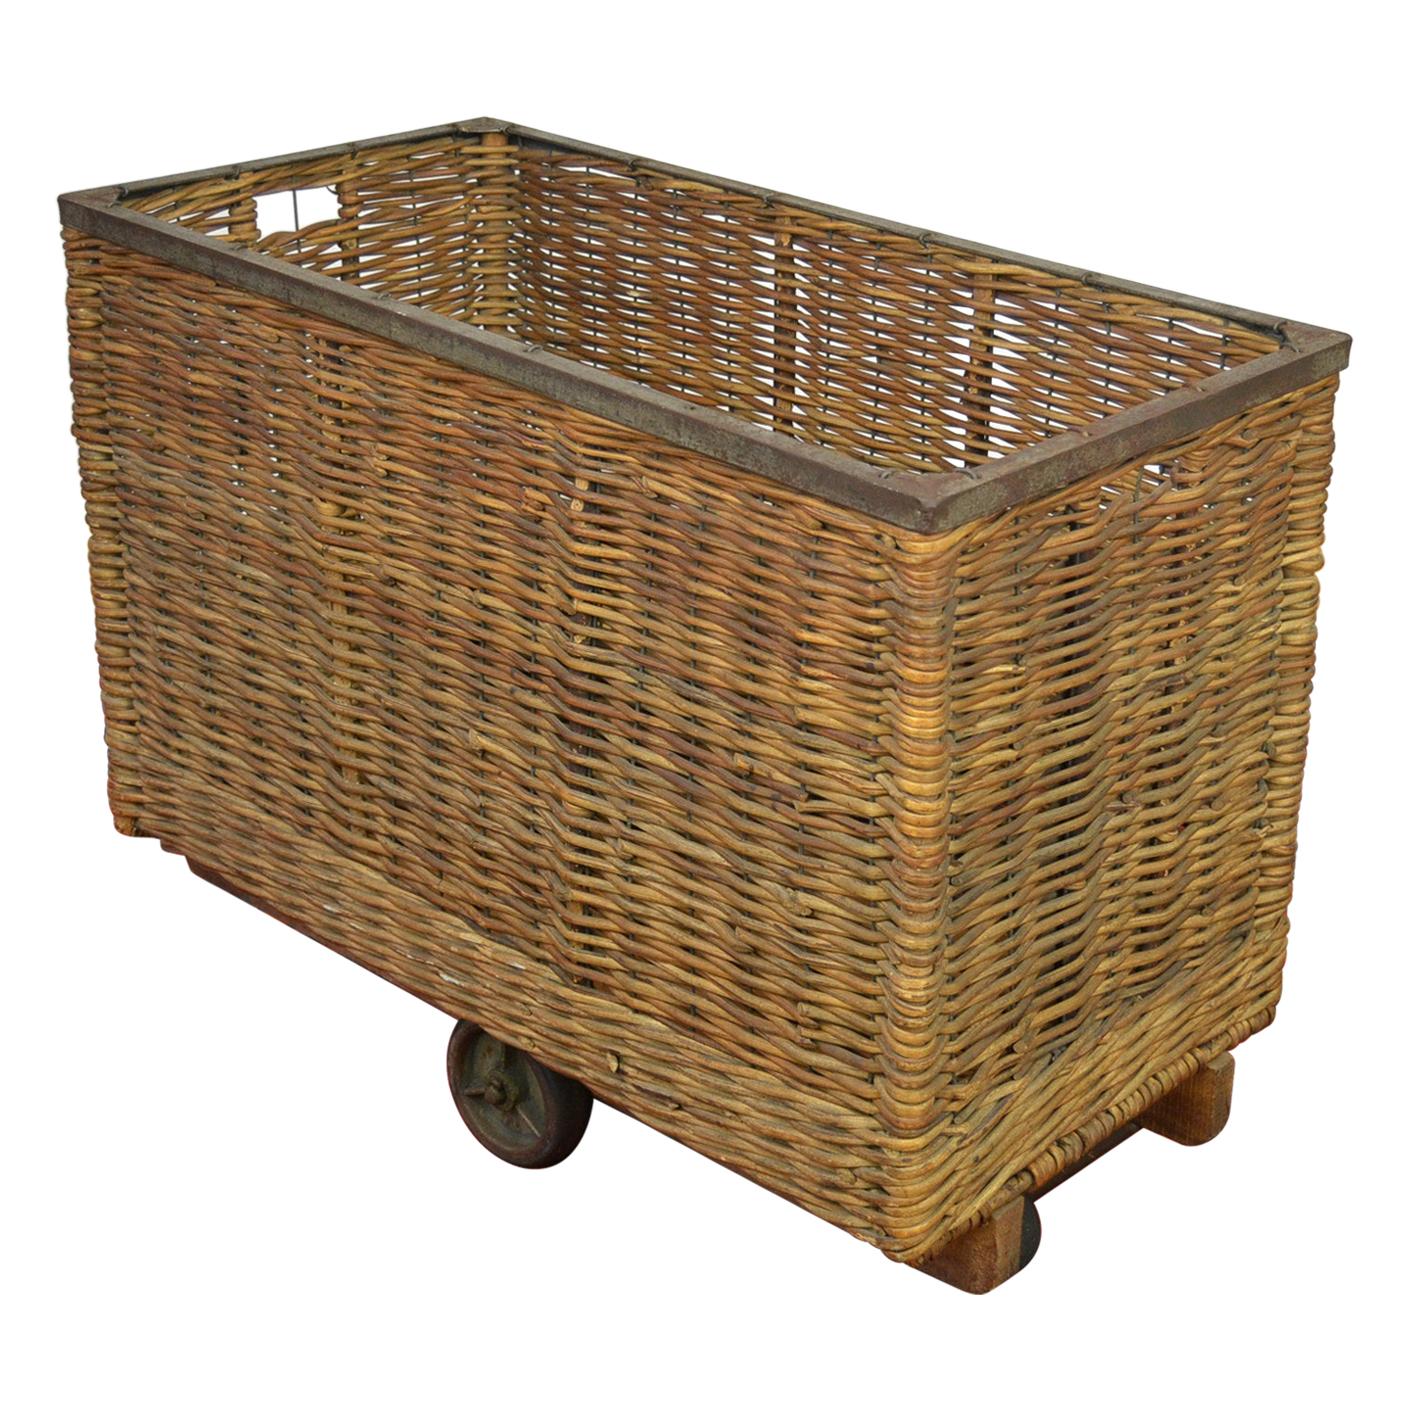 Antique Wicker Factory Basket on Wheels